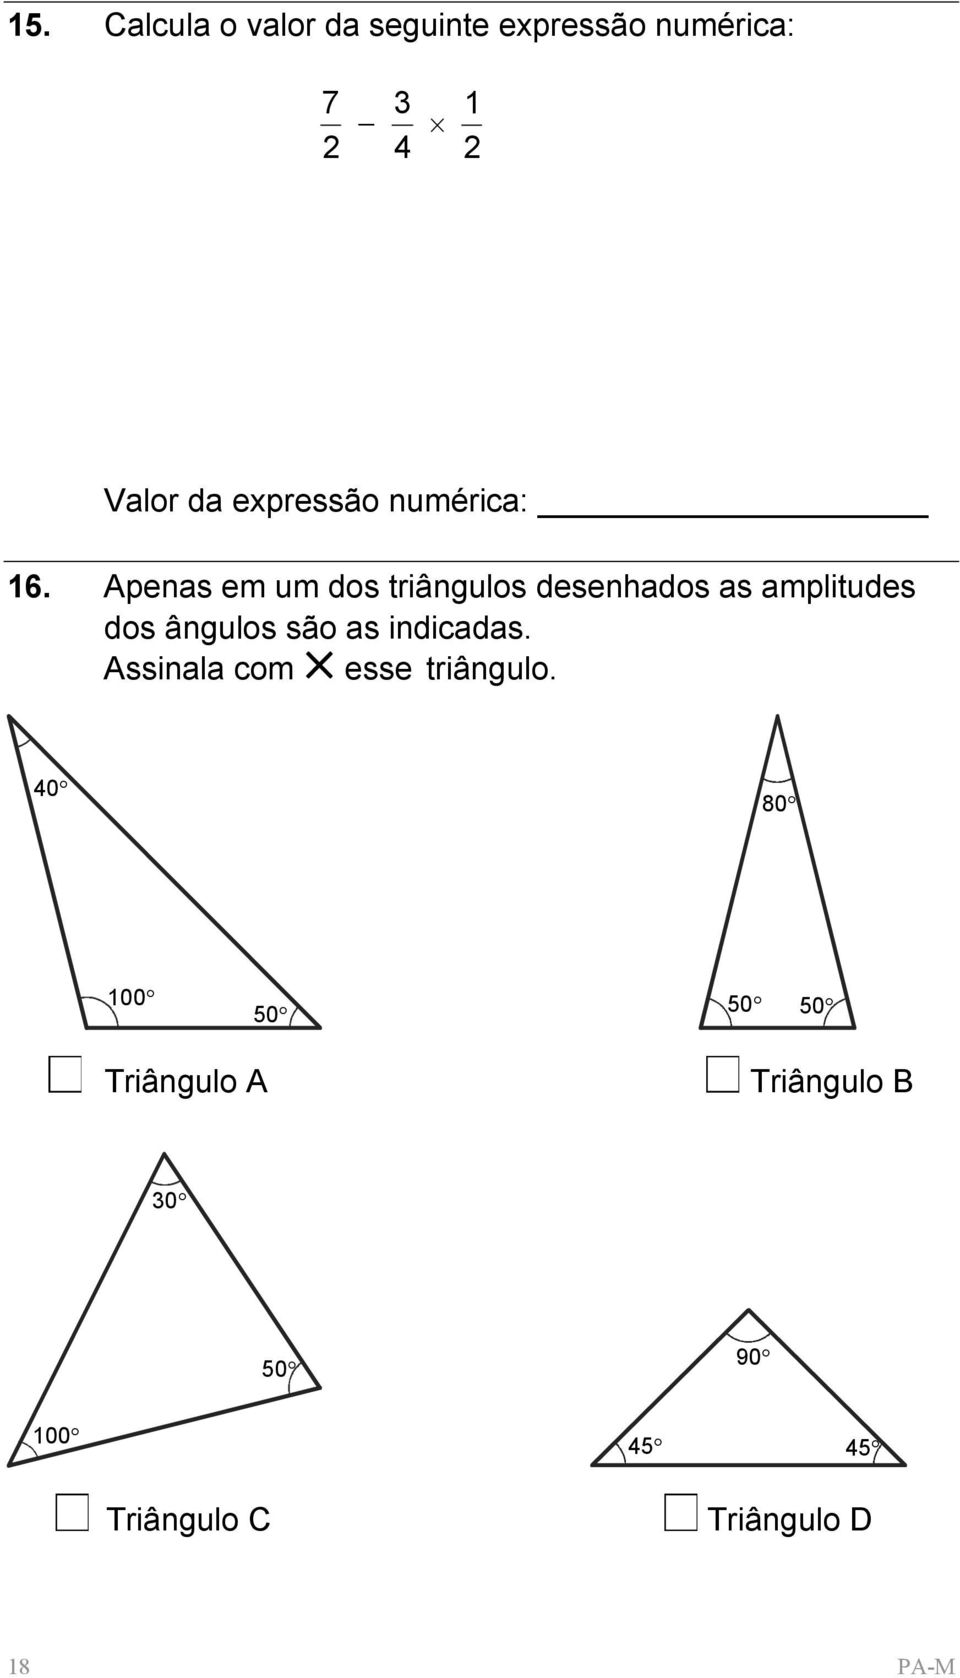 Apenas em um dos triângulos desenhados as amplitudes dos ângulos são as